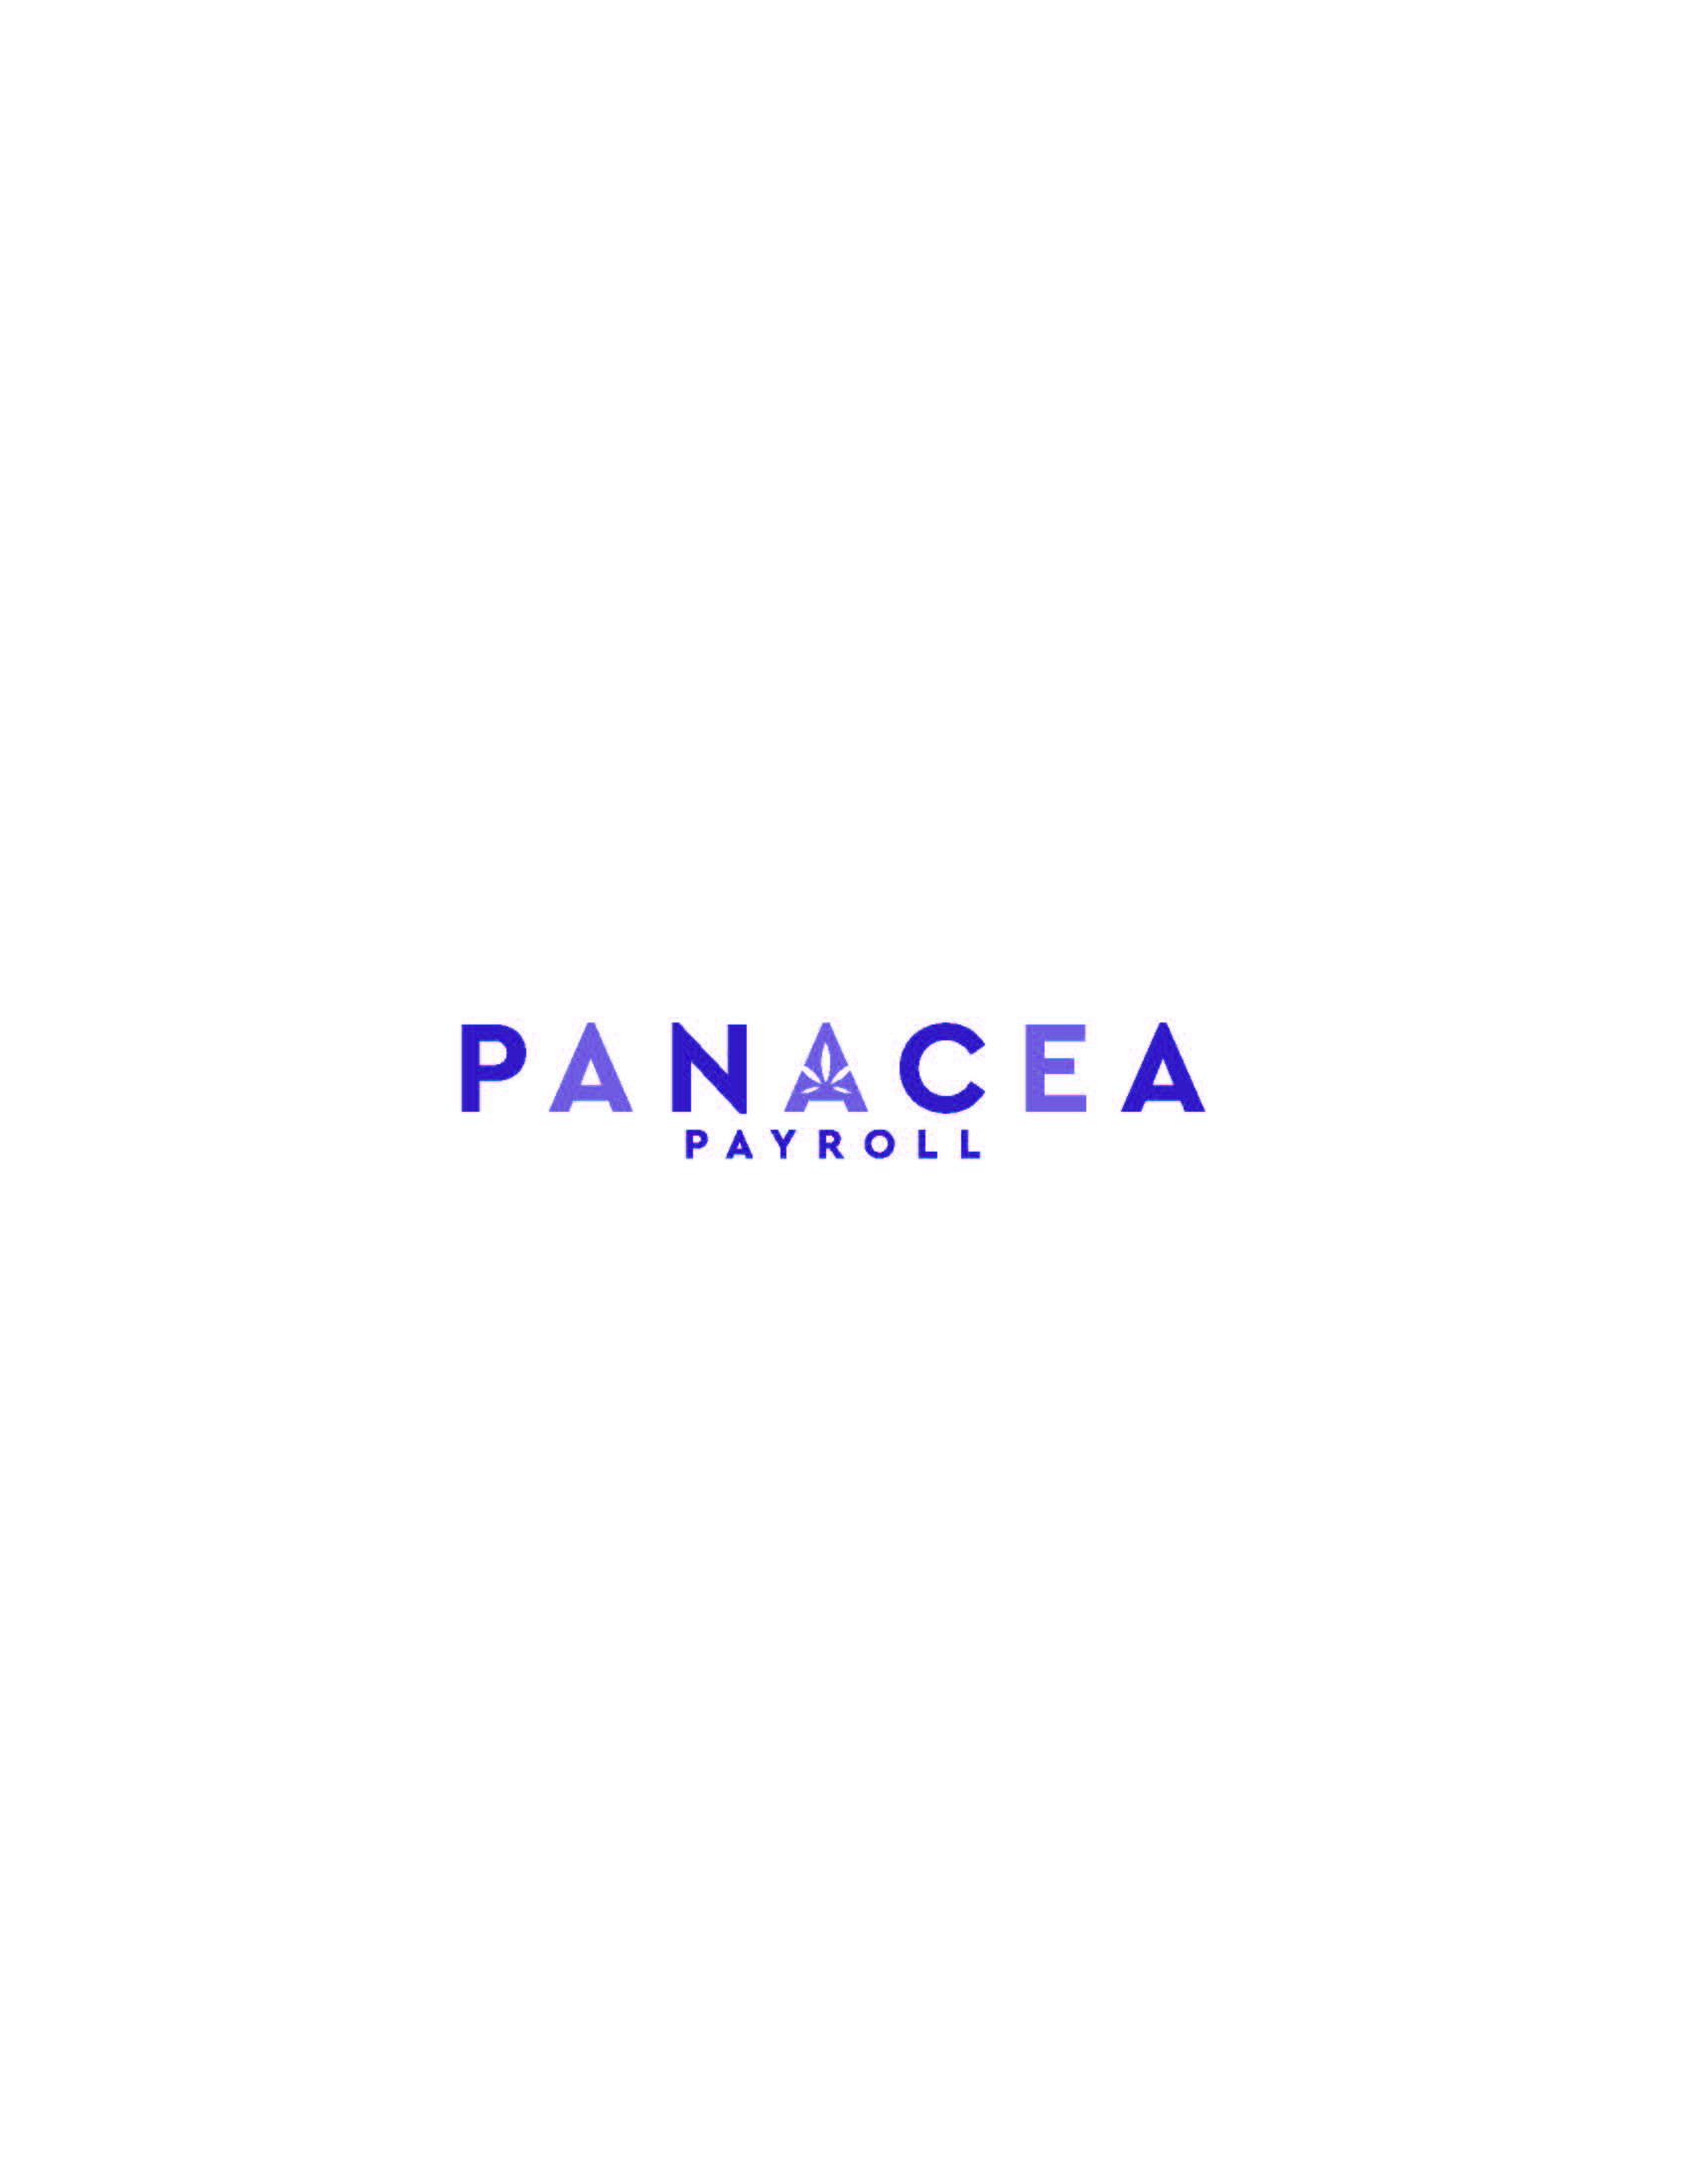 panacea logo larger